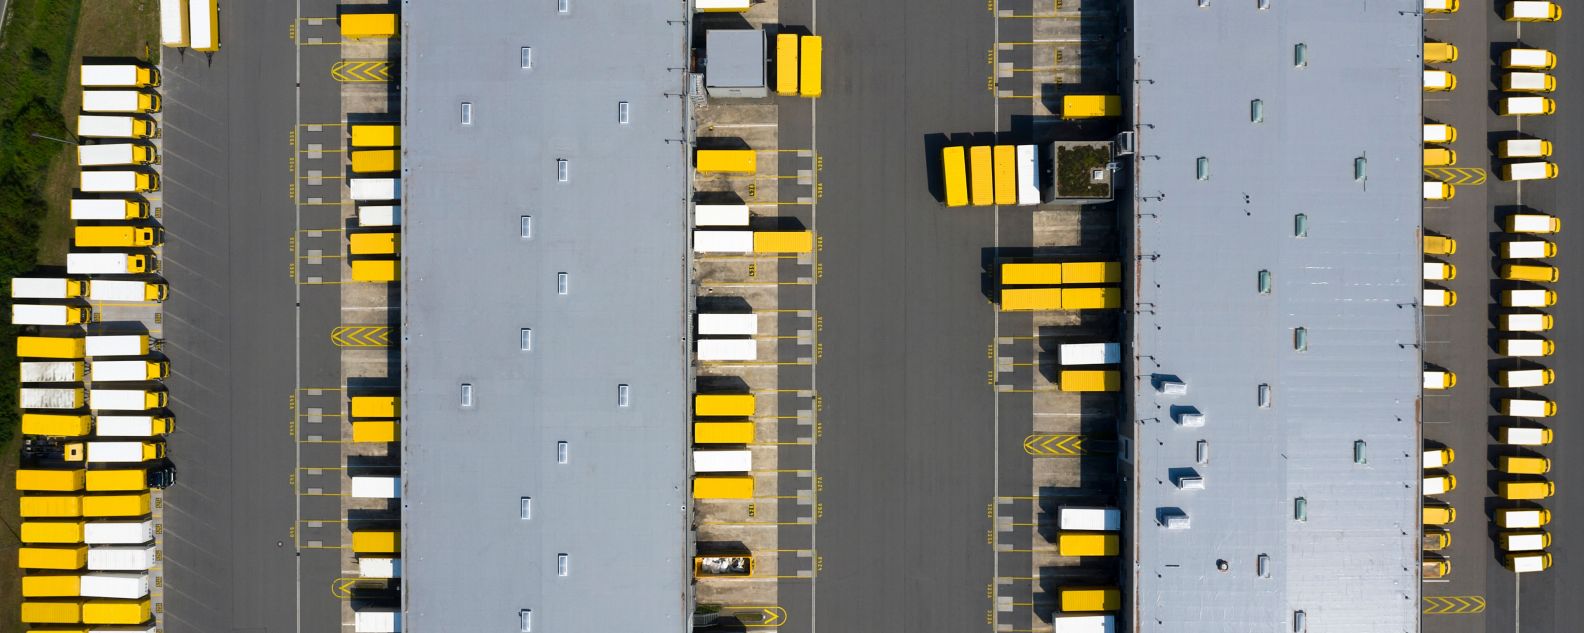 貨物コンテナと物流倉庫の航空写真